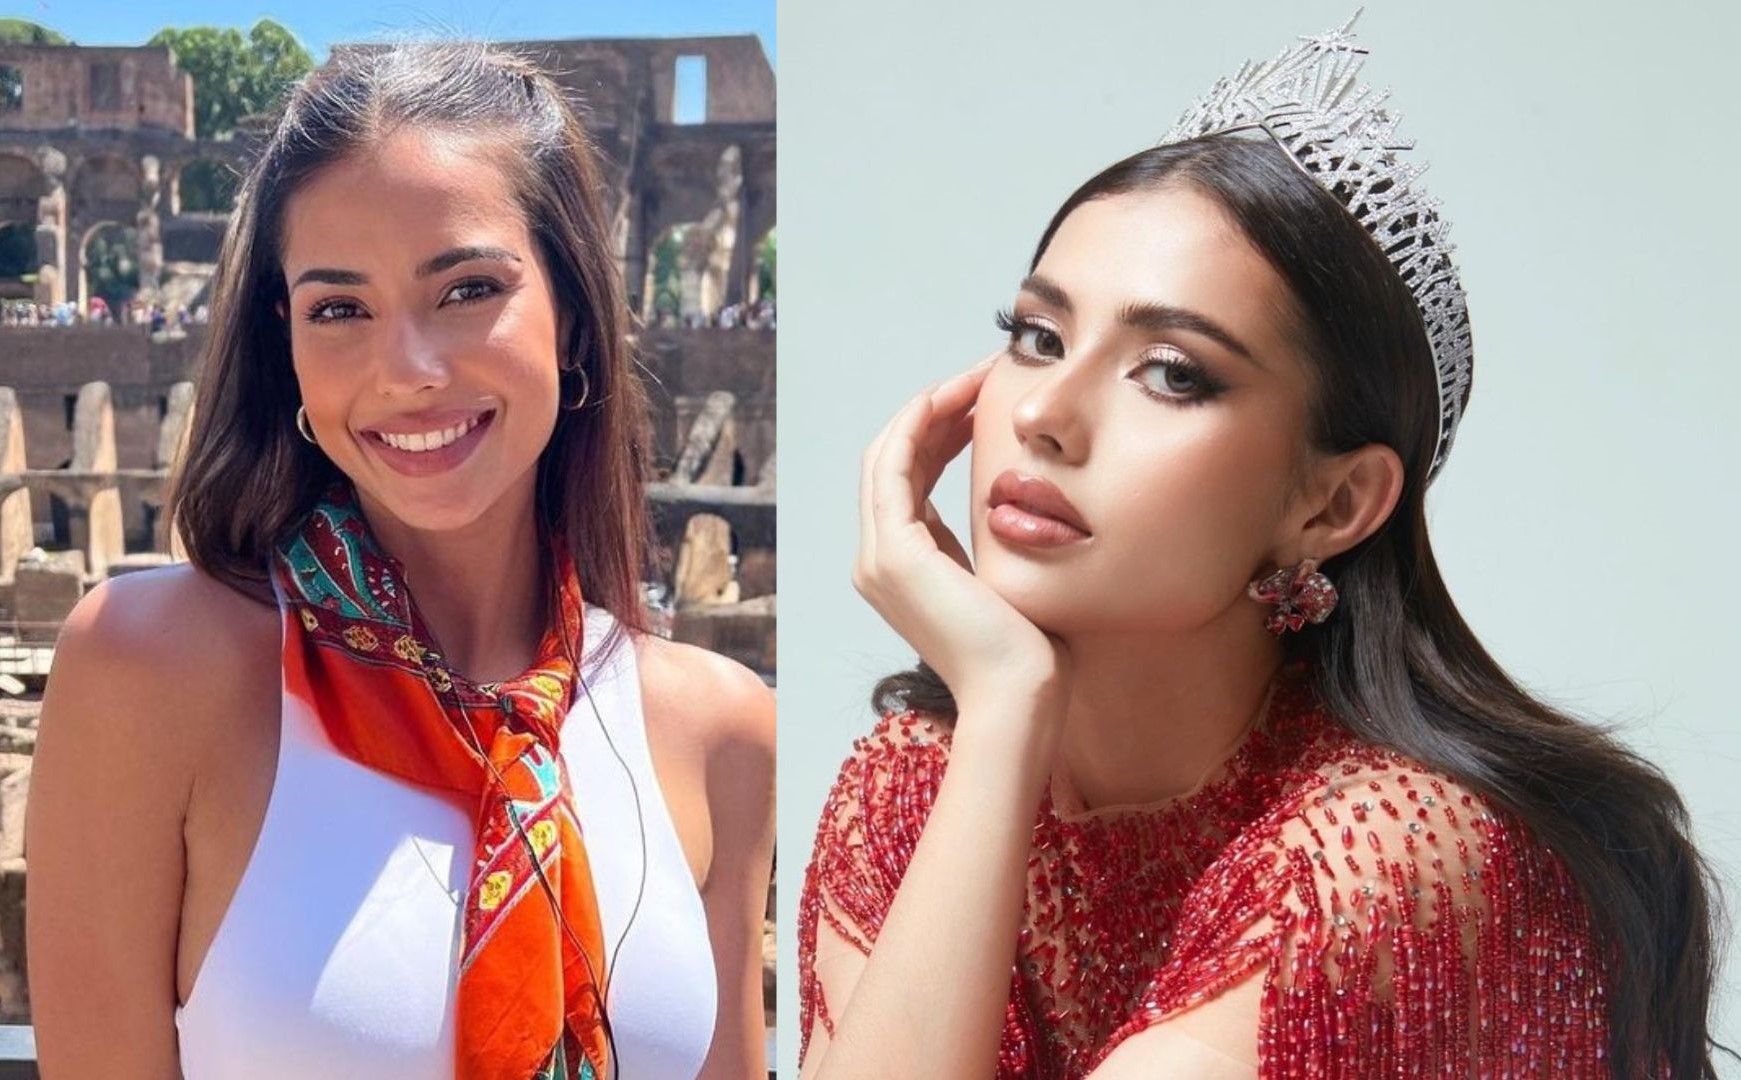 Interview Anntonia Porsild, Miss Universe Thailand, on inspiring change